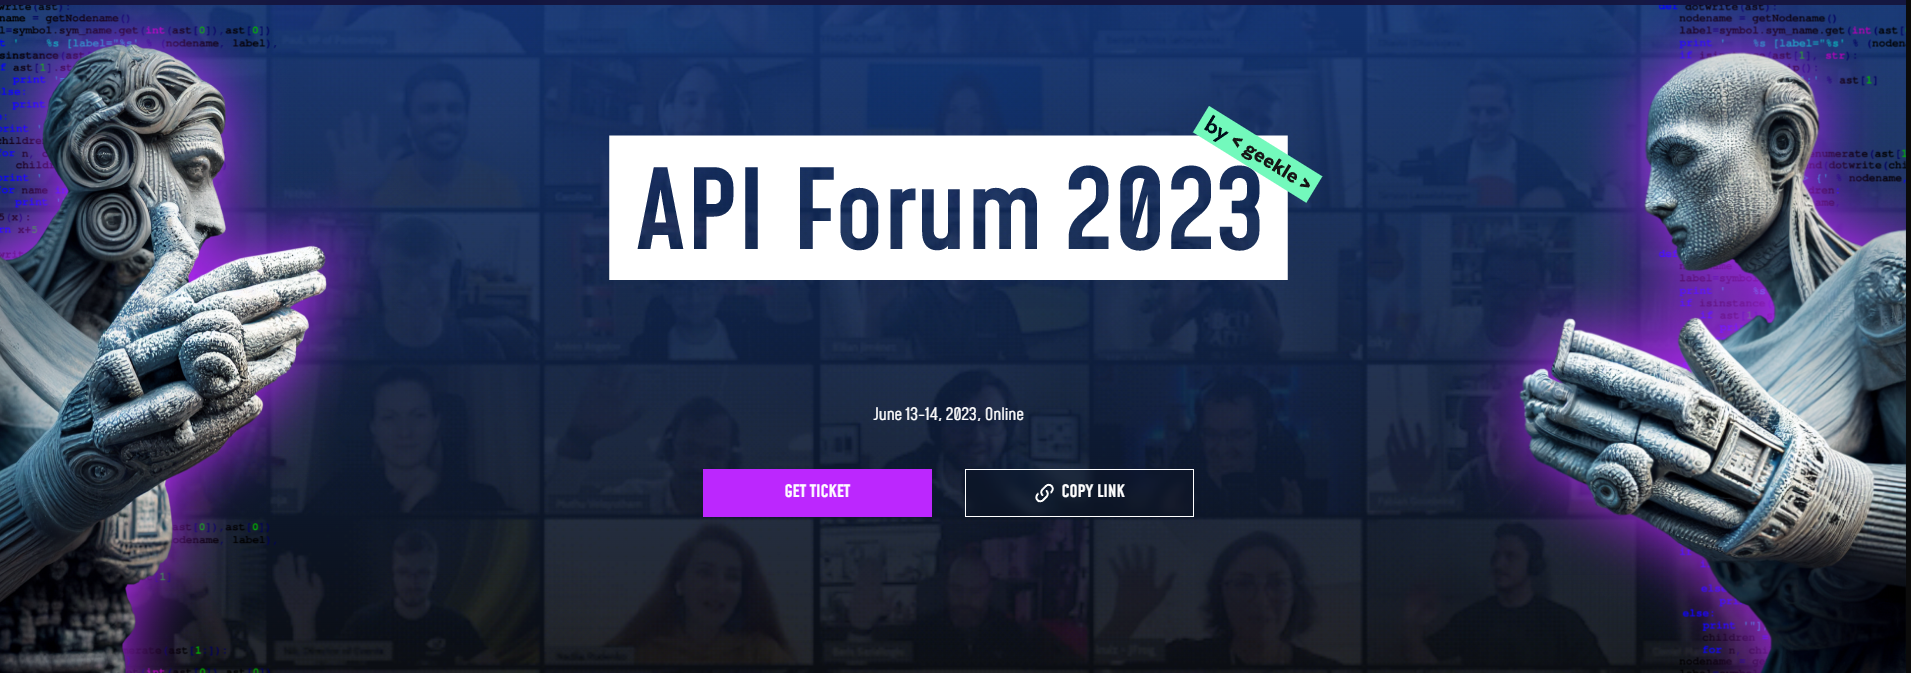 API Forum 2023